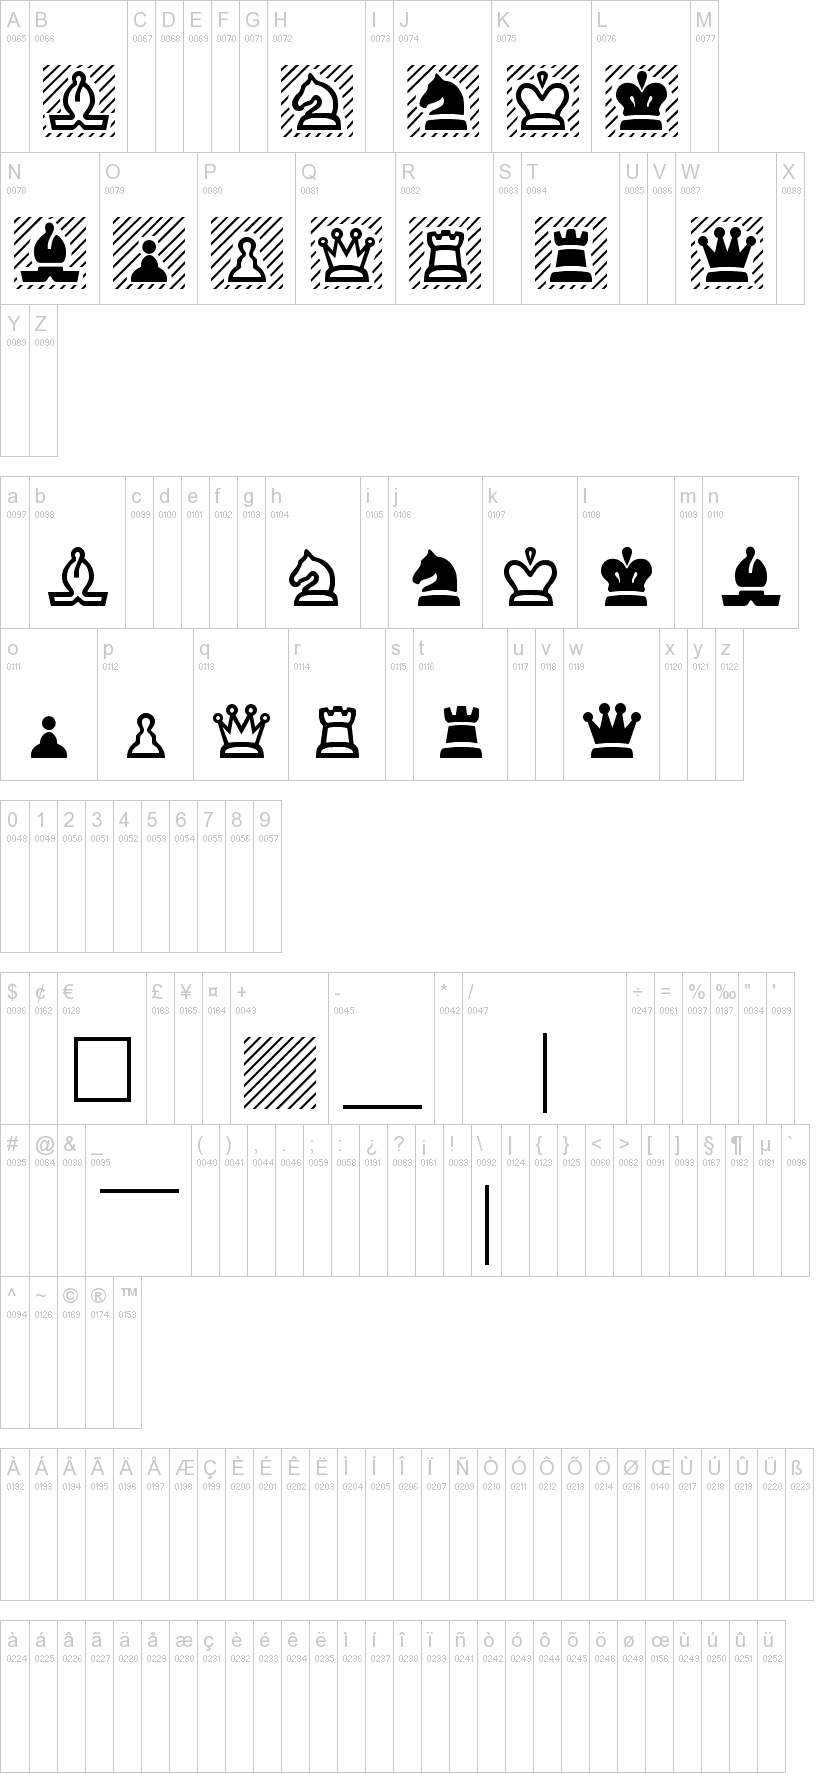 Chess字符映射图